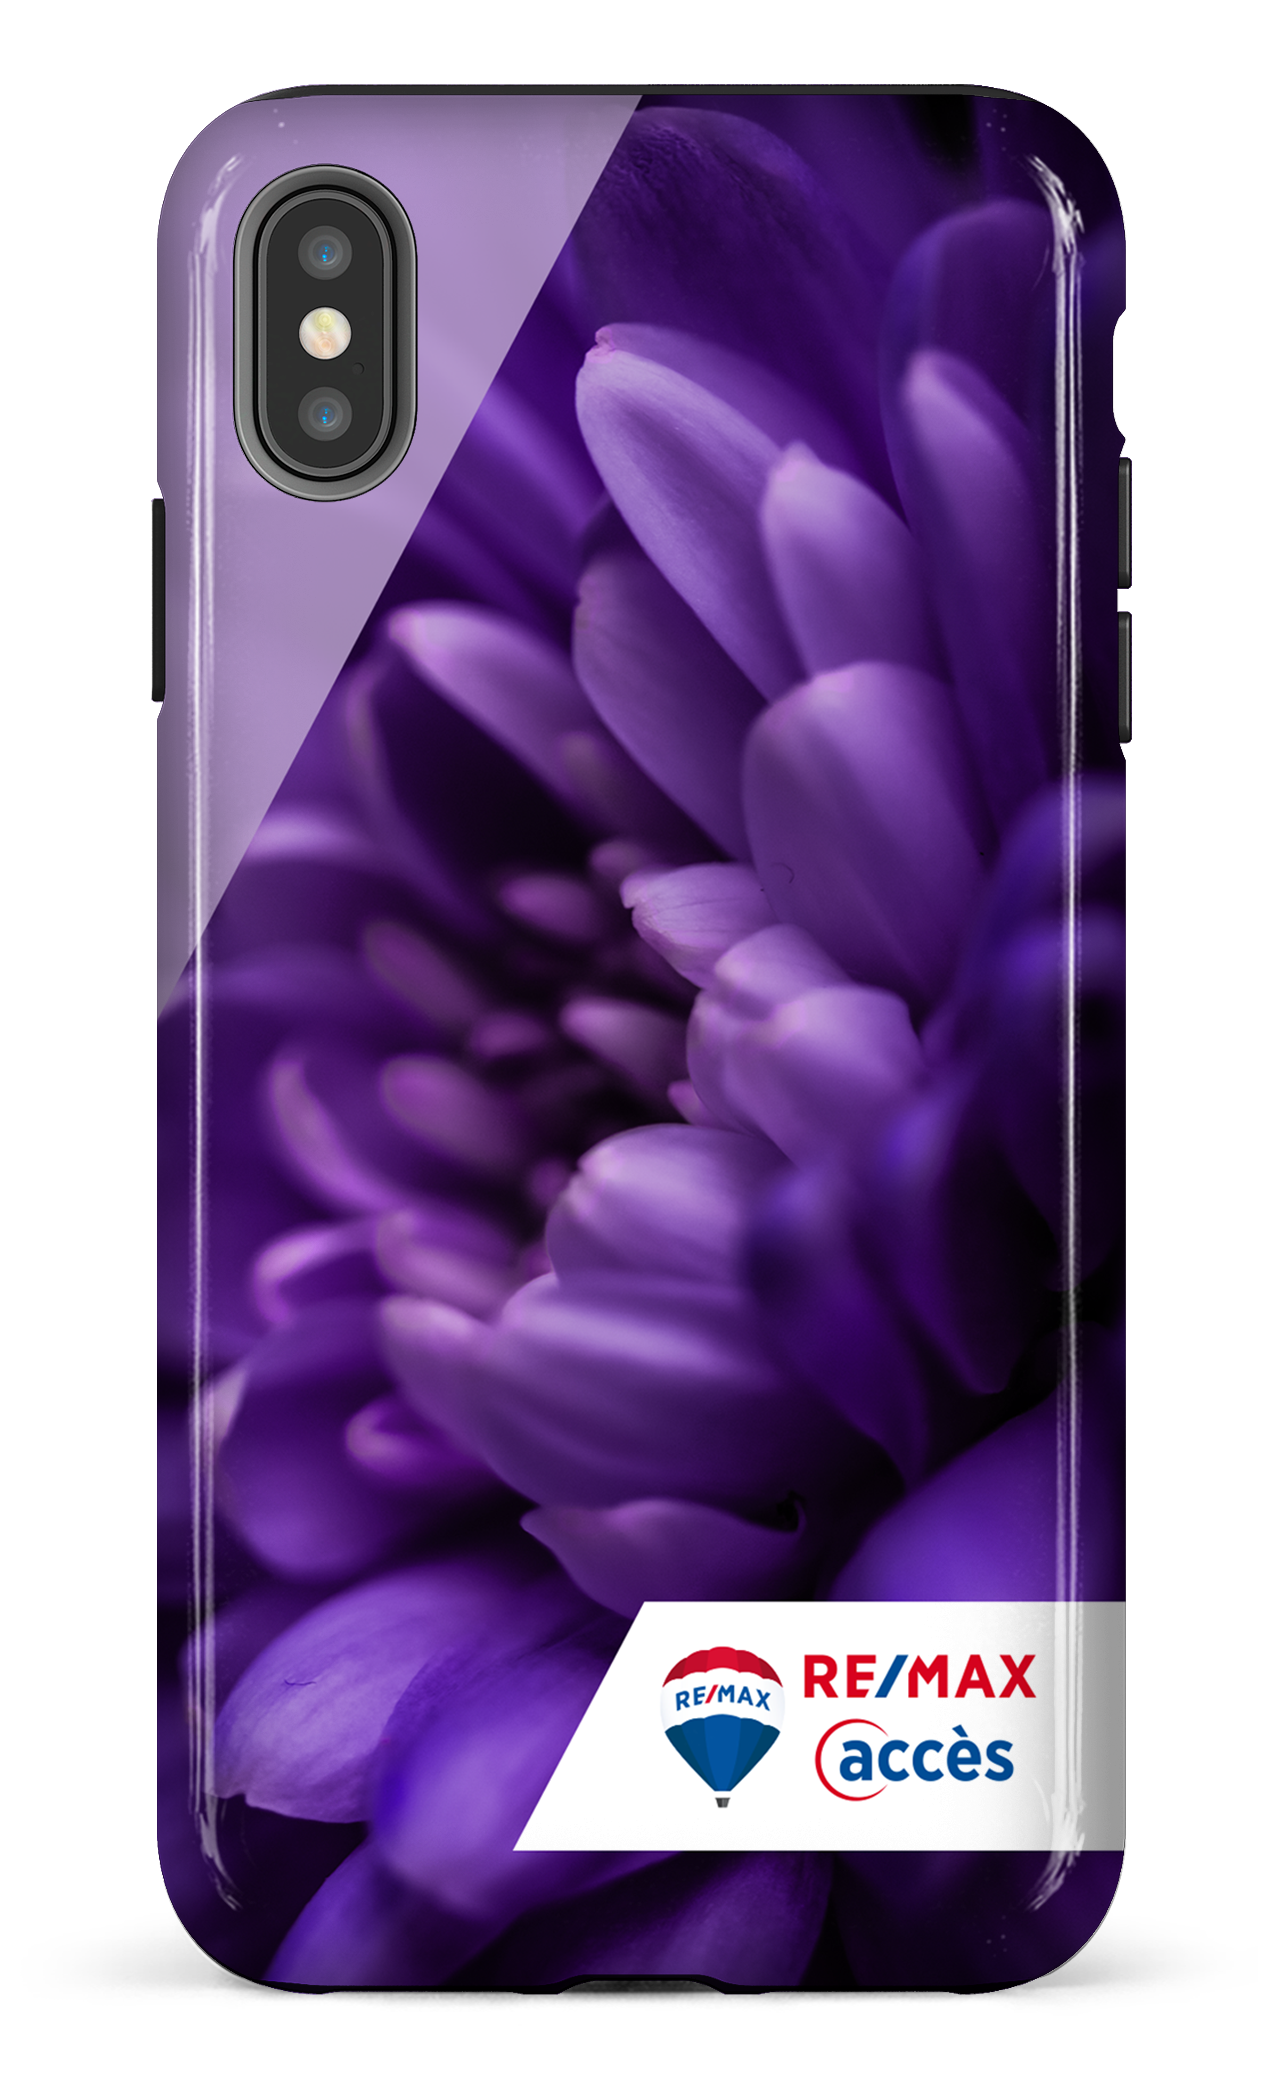 Fleur gros plan - iPhone XS Max